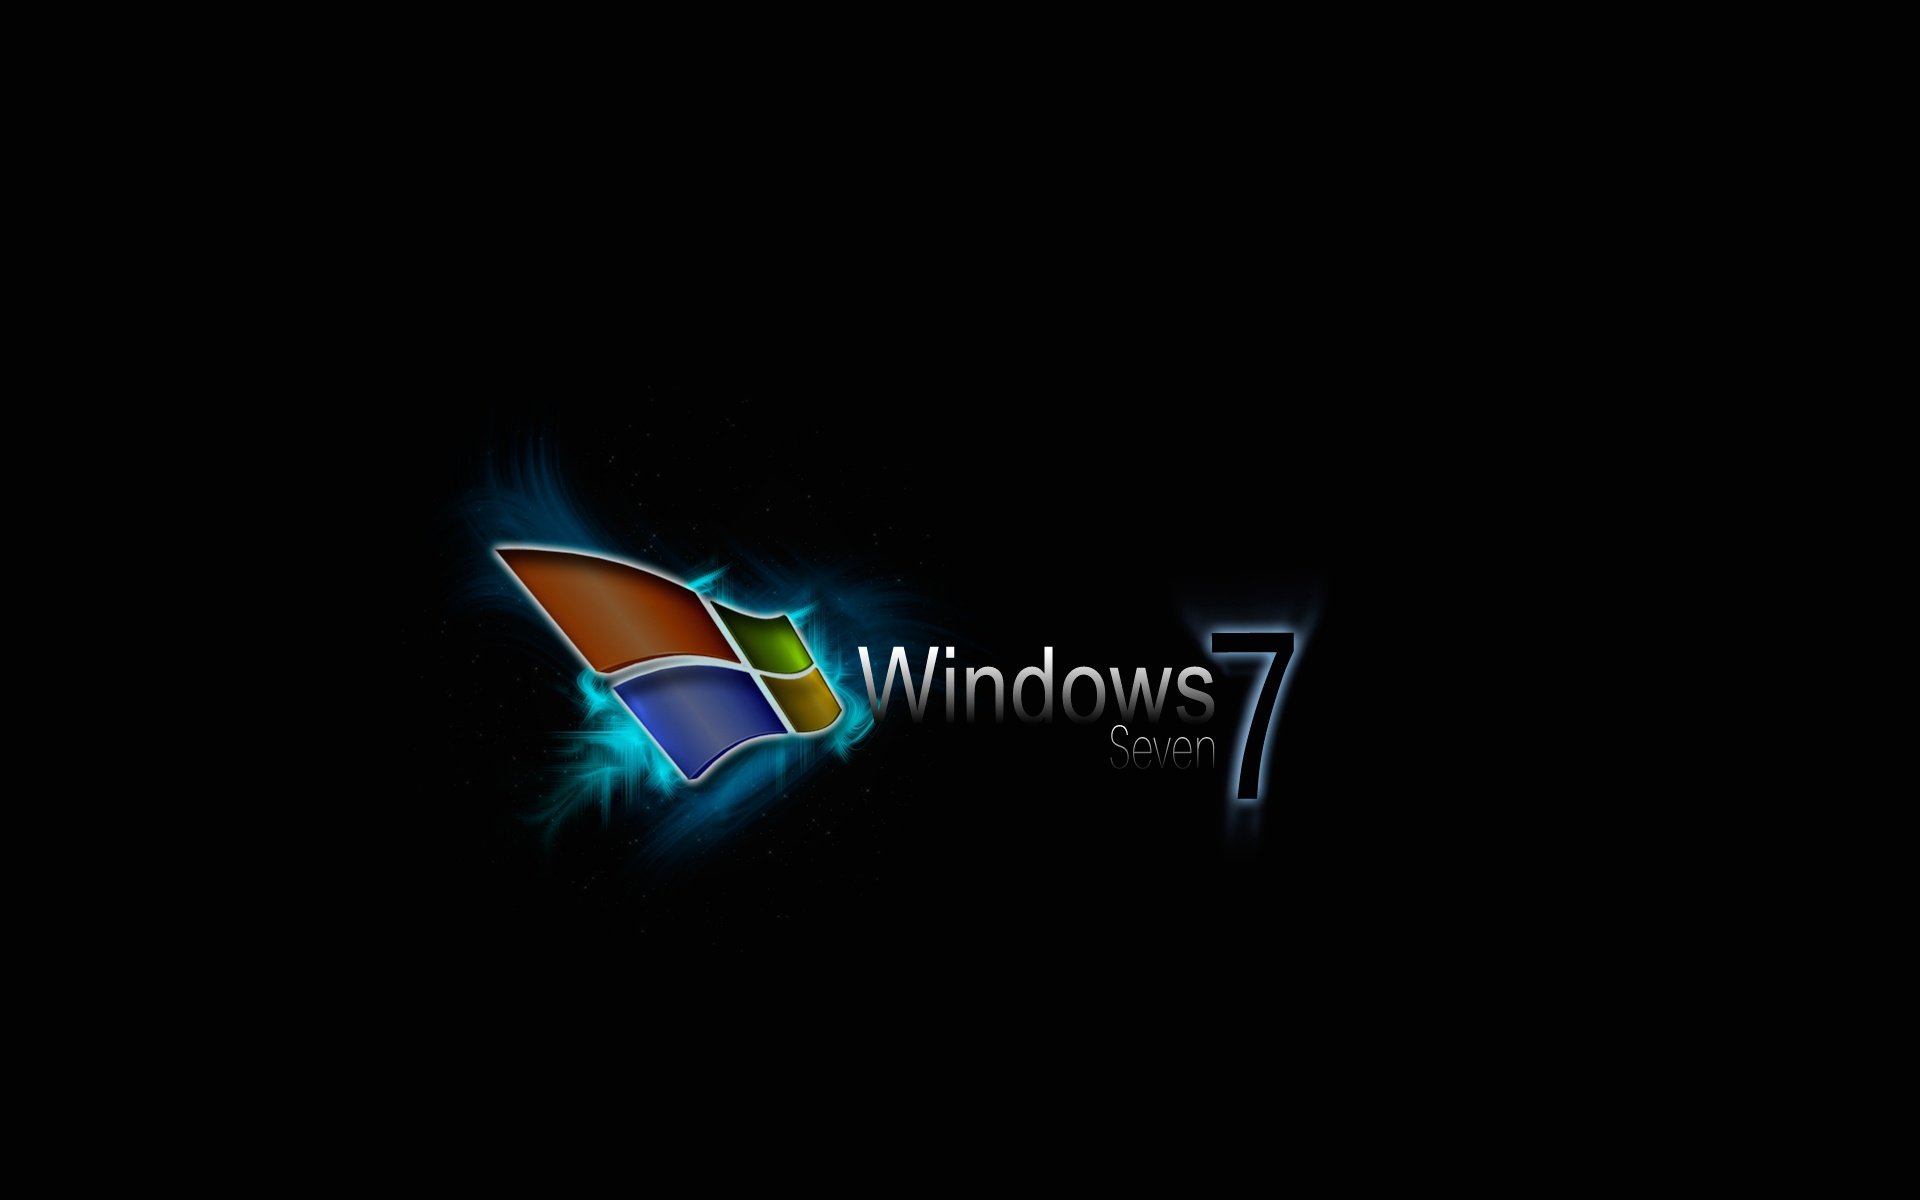 Windows Seven Wide HD Wallpaper In Jpg Format For